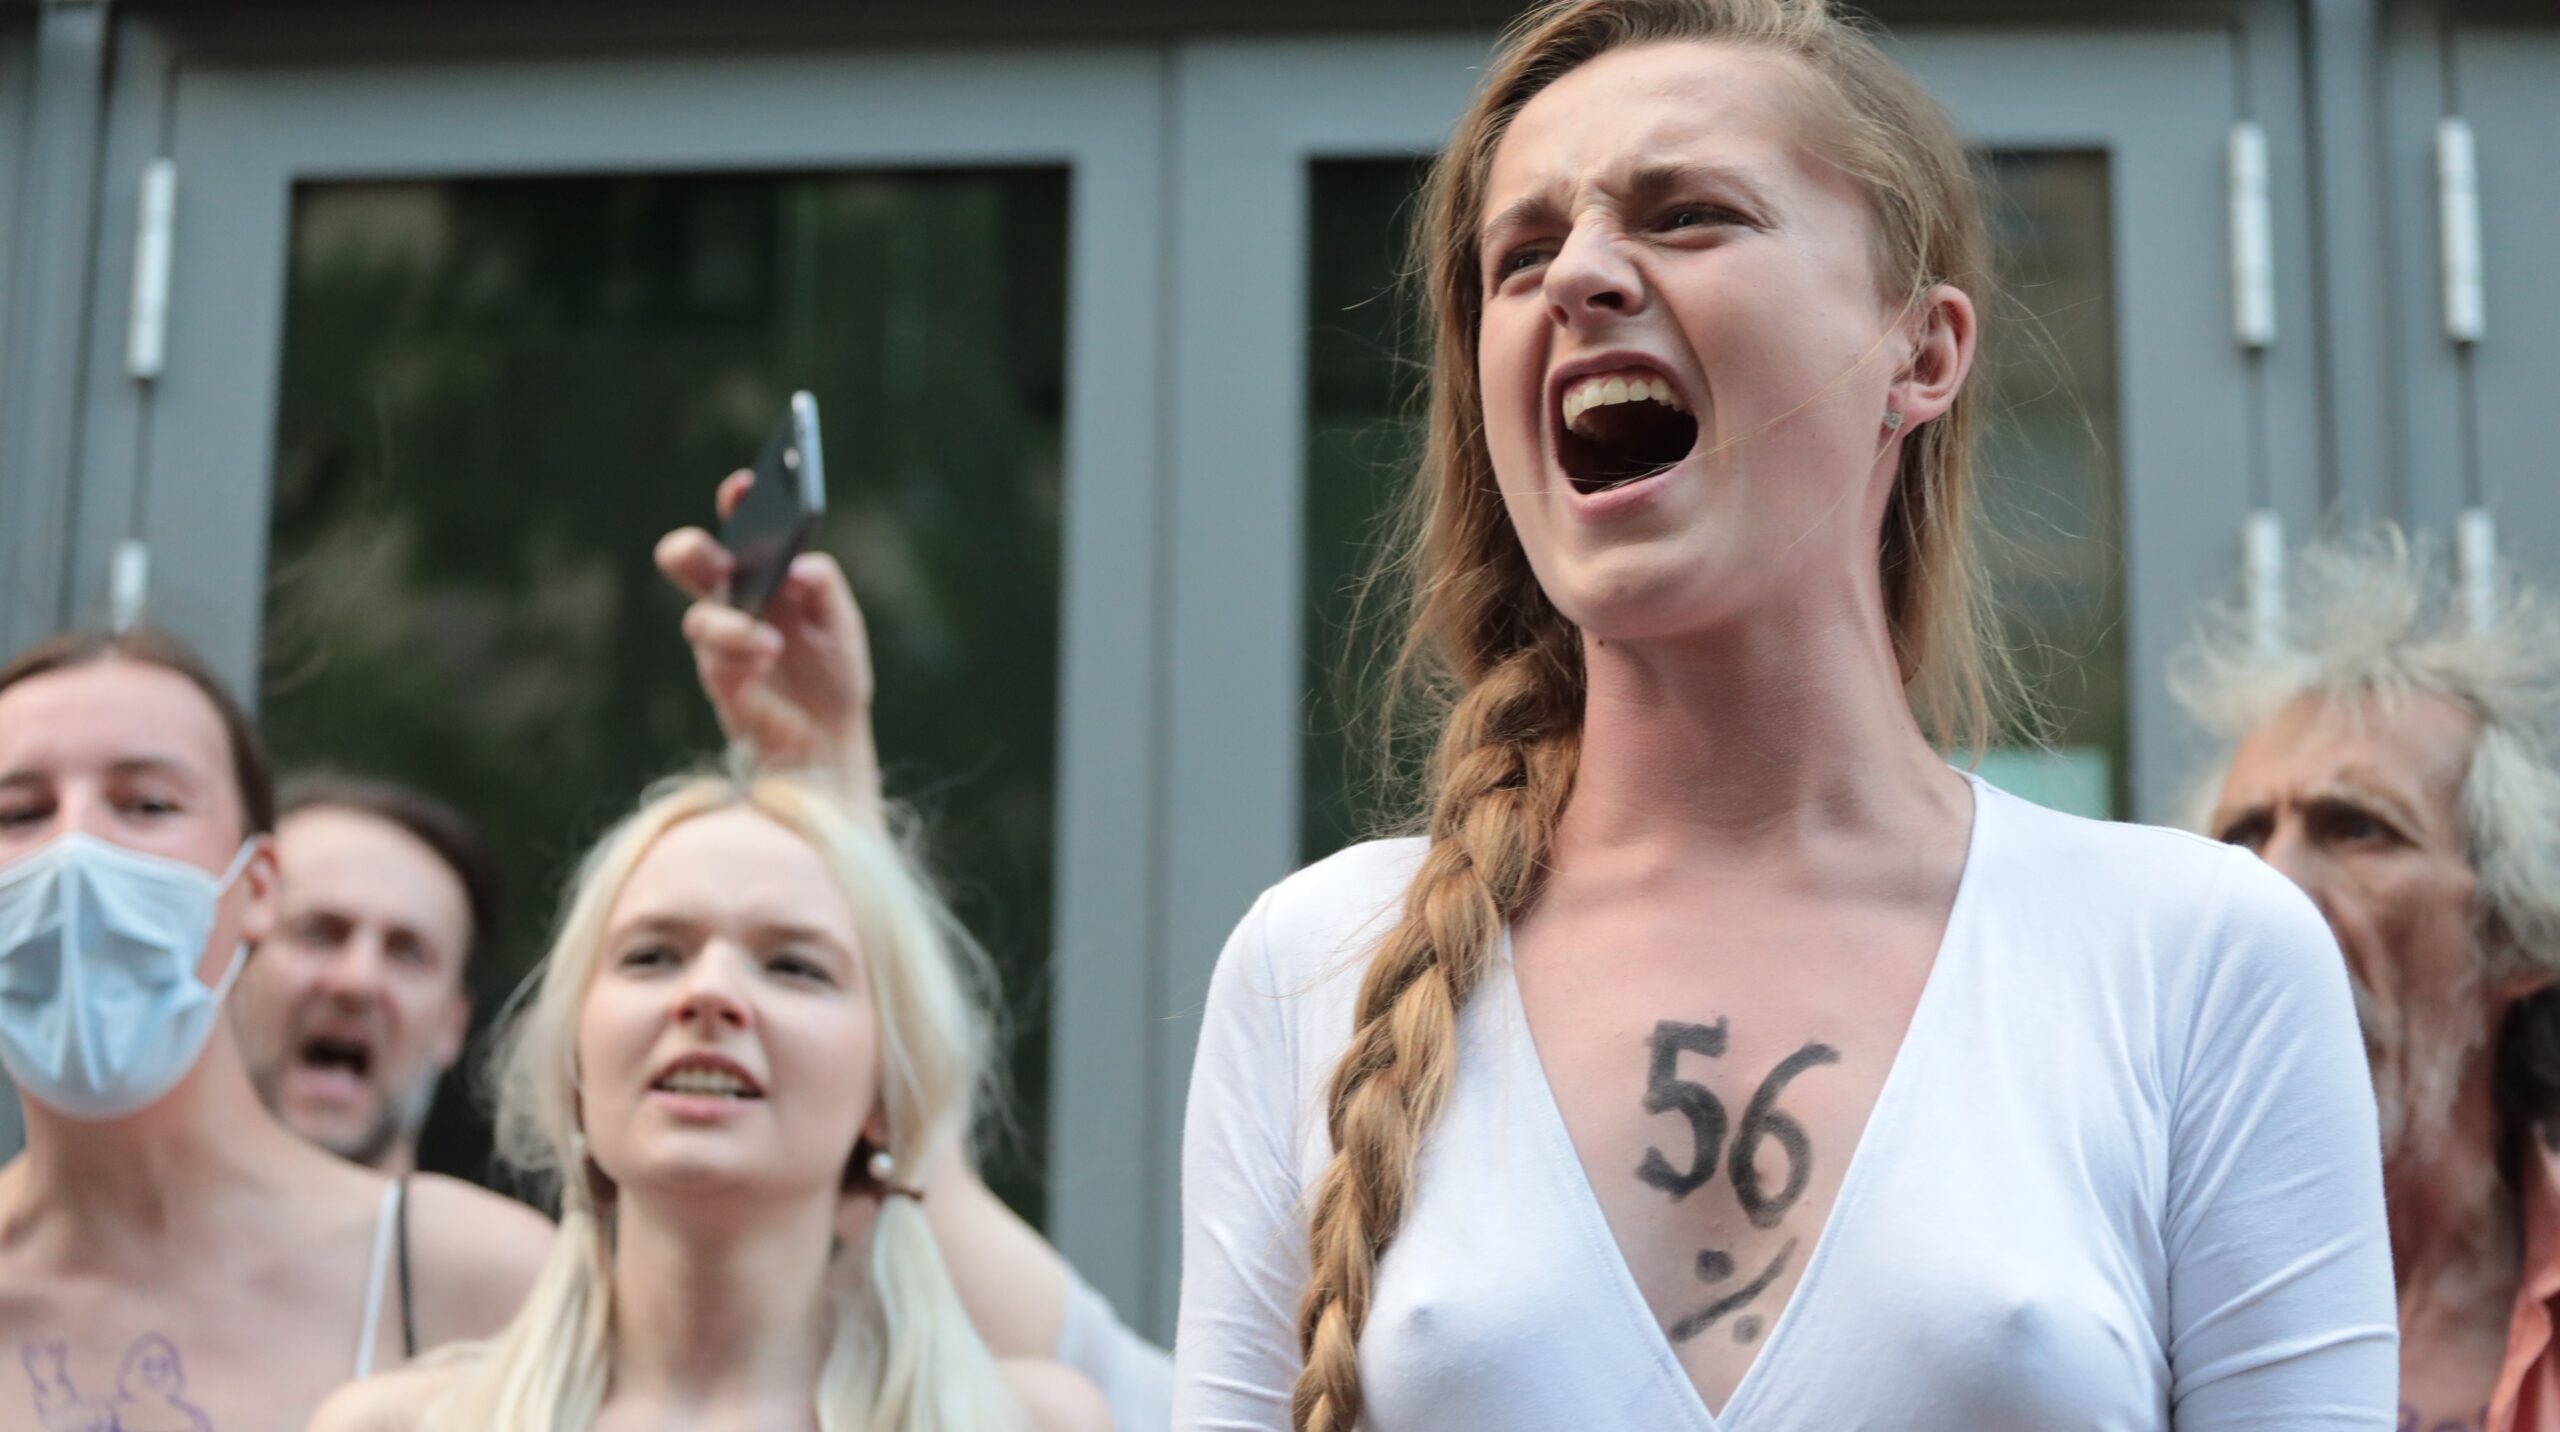 Polska opozycja wyrzuci kandydata za poparcie dla pełnego dostępu do aborcji